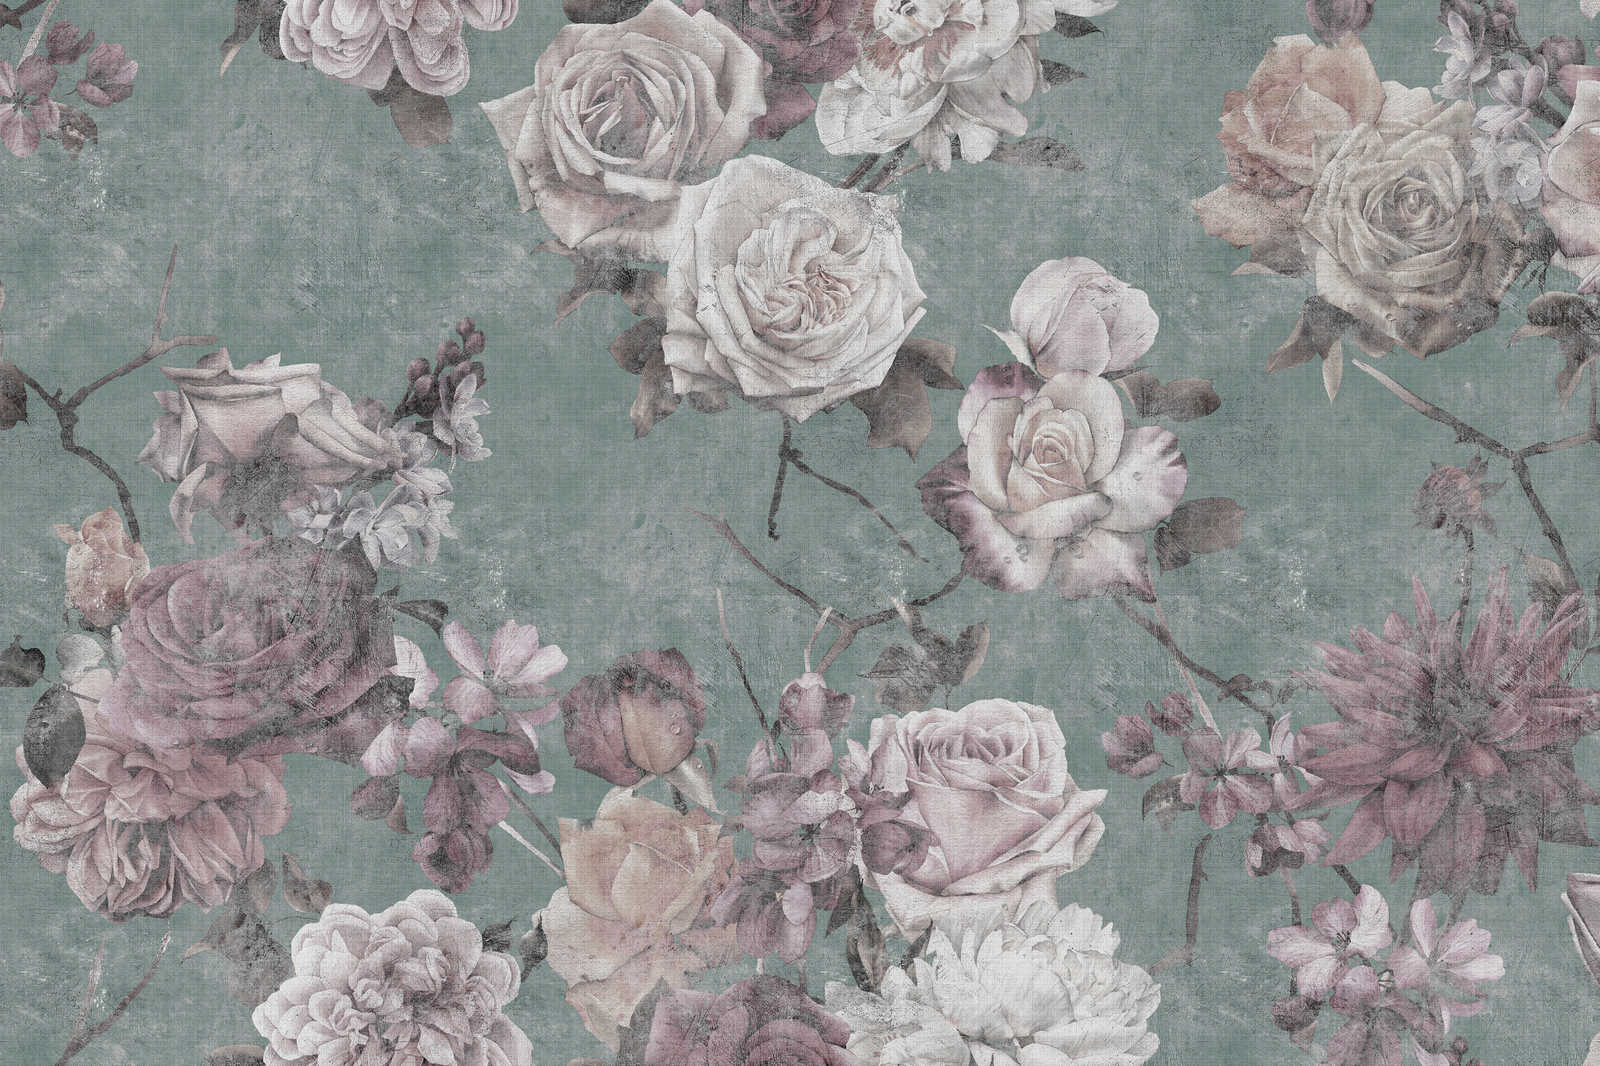             La Bella Addormentata 2 - Quadro su tela con petali di rosa in stile vintage - 0,90 m x 0,60 m
        